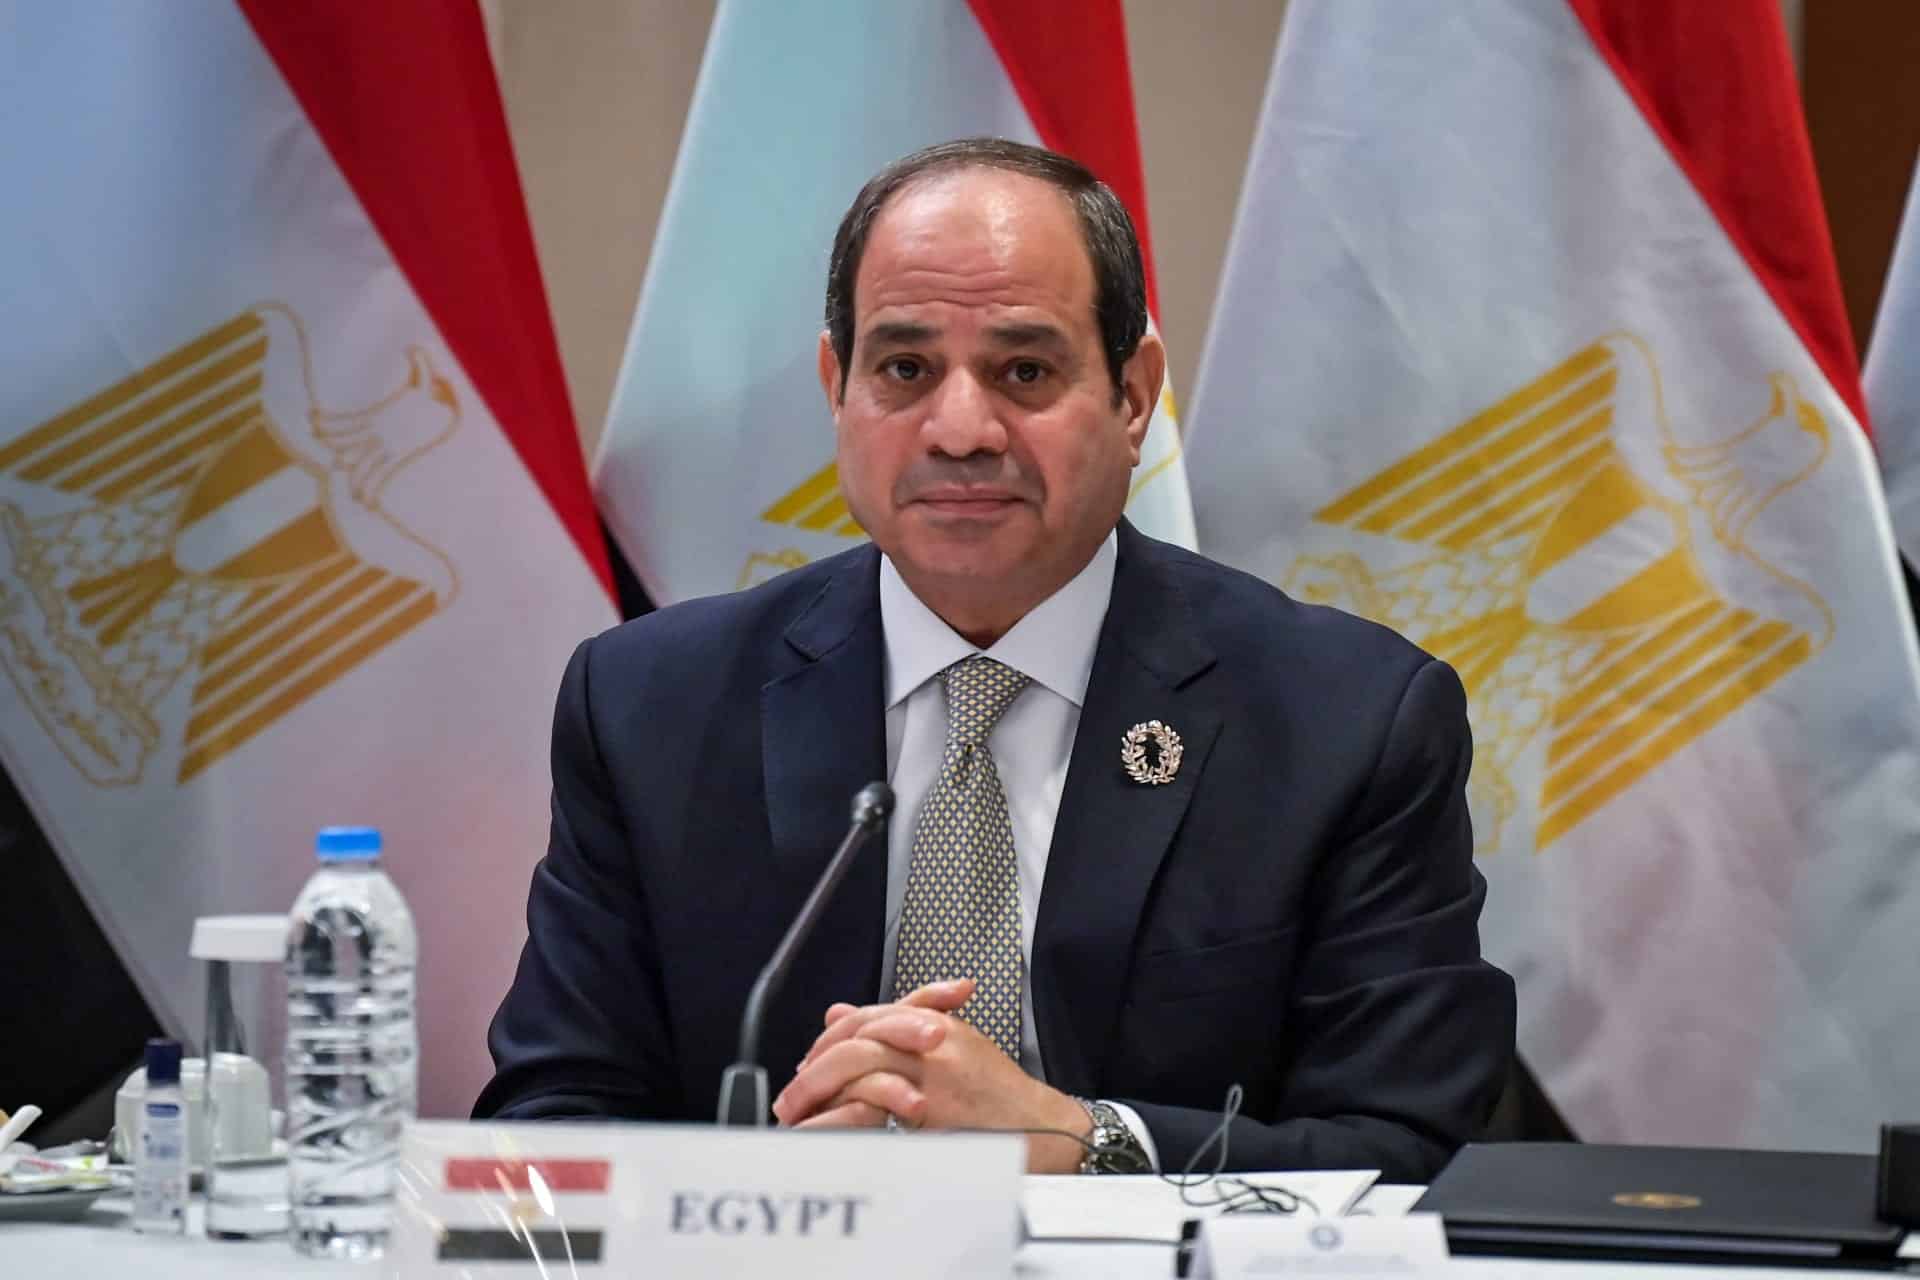 استقالة عدد من ضباط المخابرات المصرية alarabtrend.com